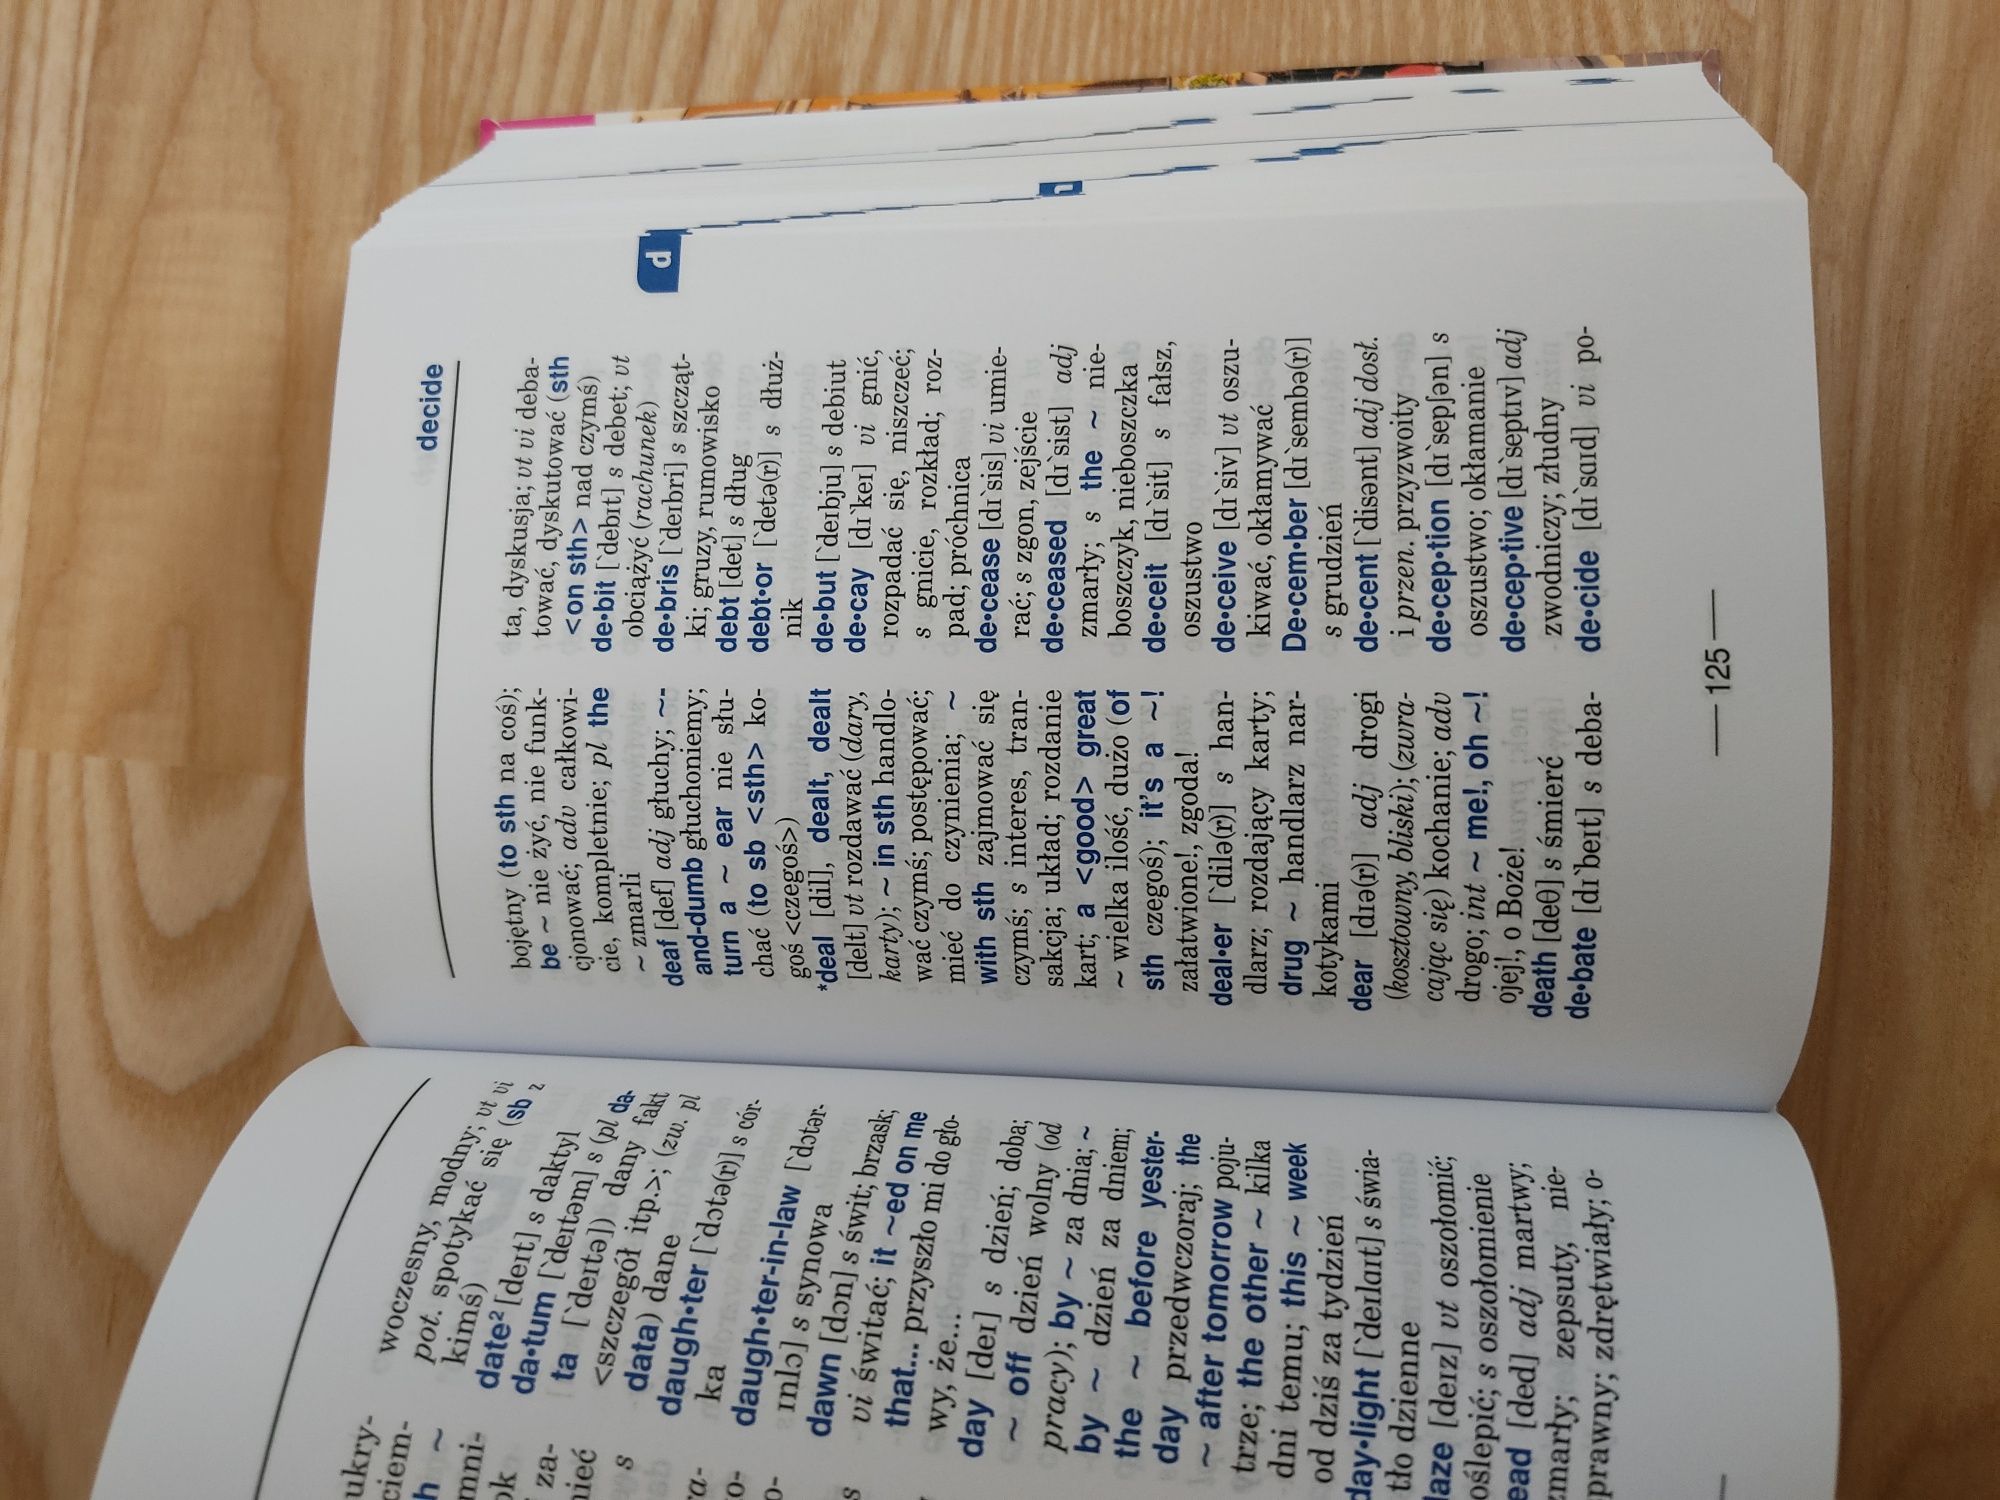 Słownik polsko-angielski i angielsko-polski